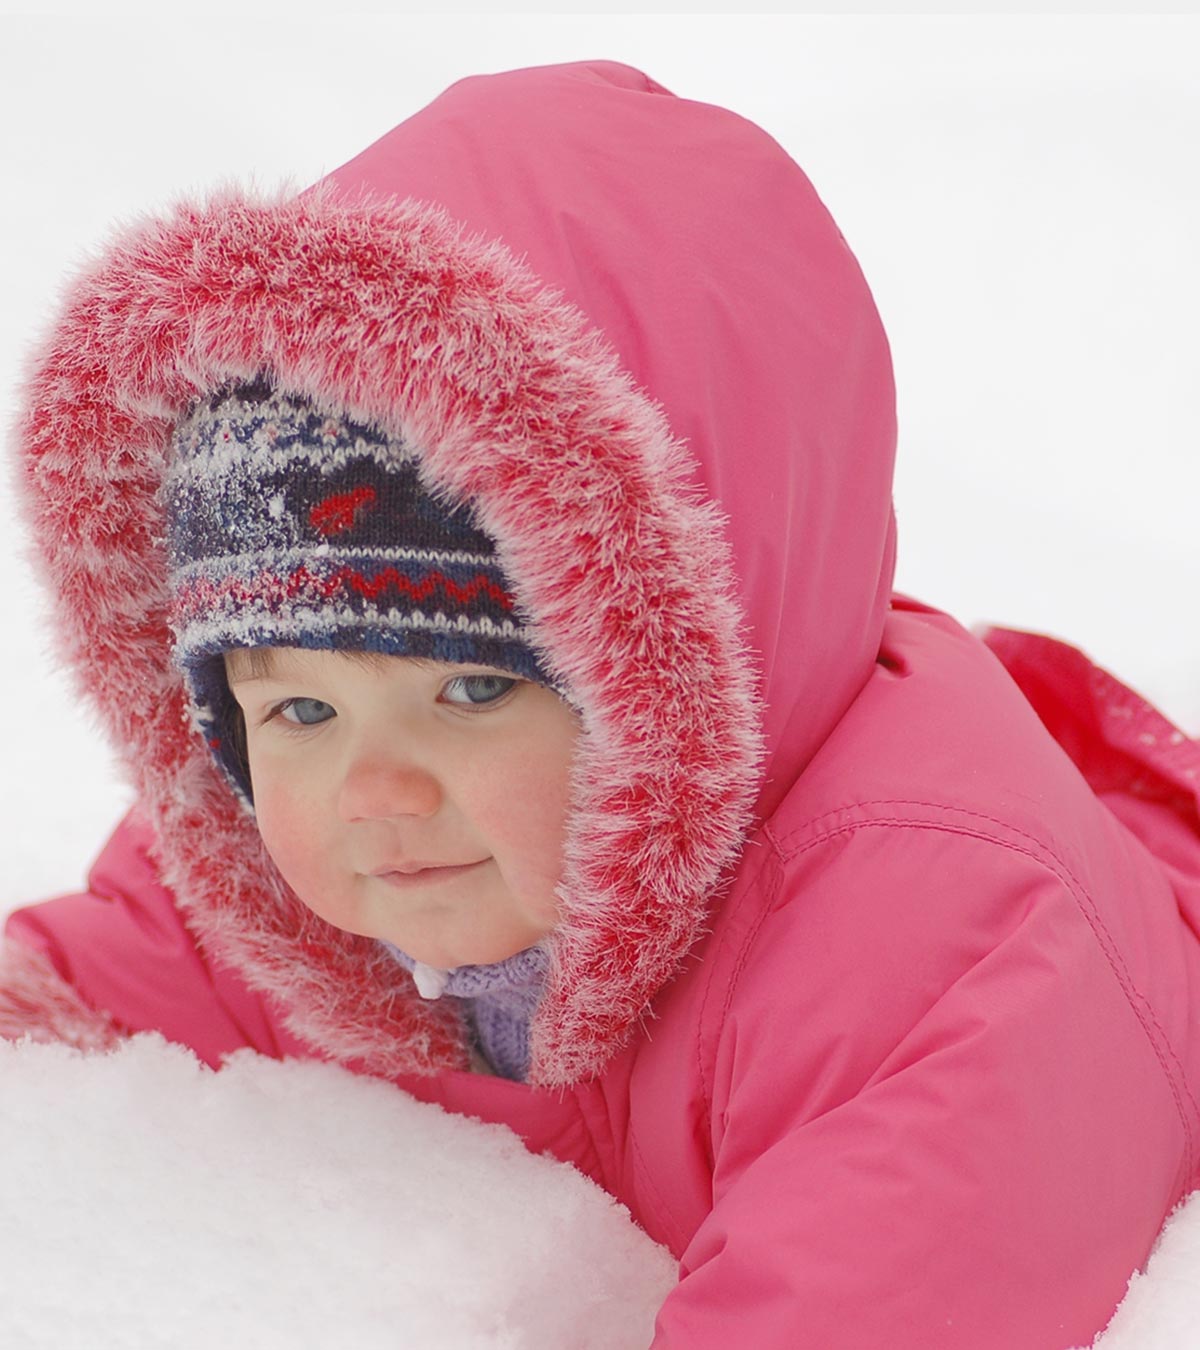 60多个宝宝的名字意味着冬天或雪增加温暖